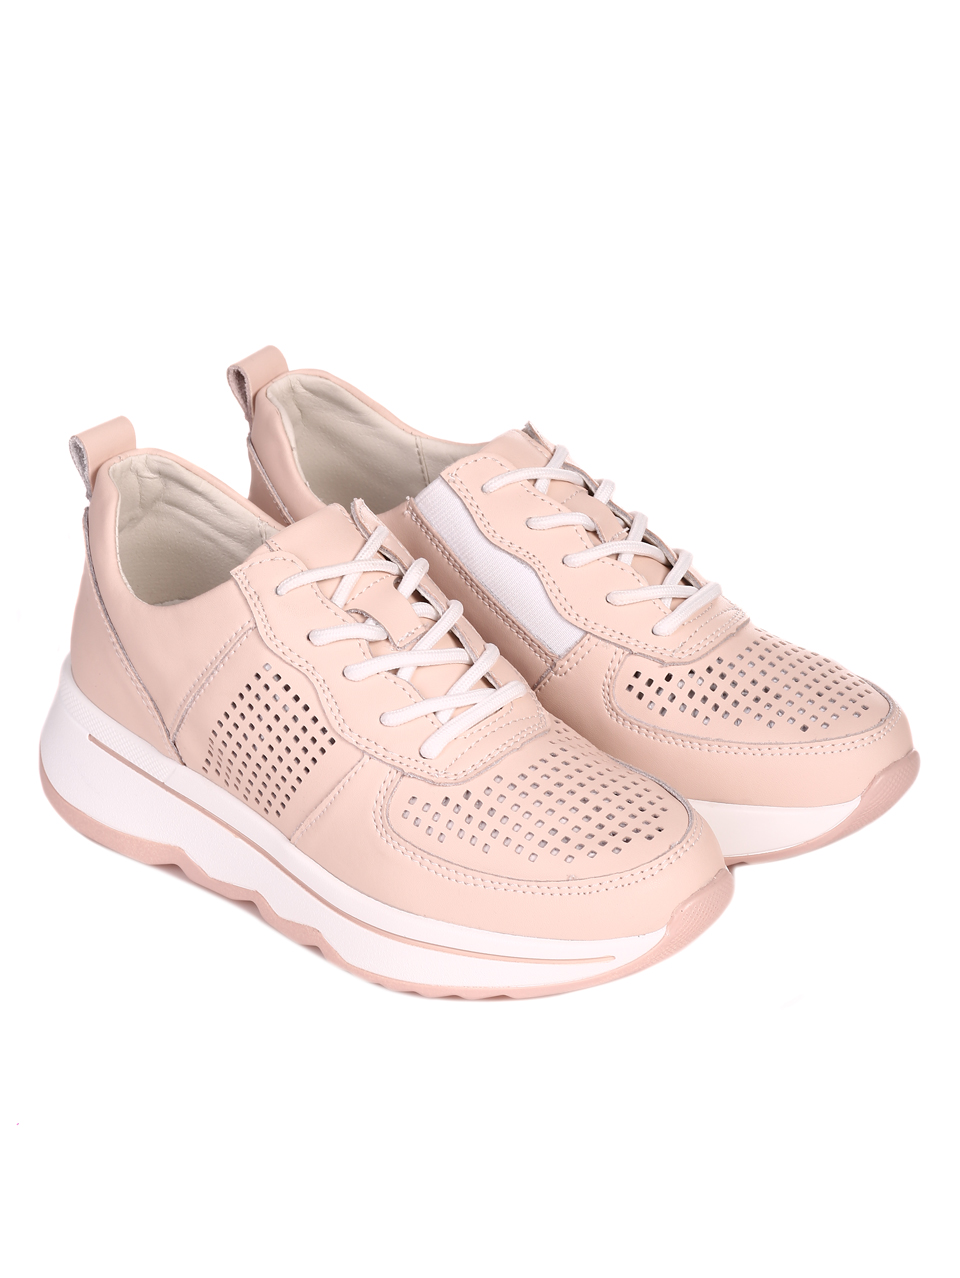 Ежедневни дамски обувки от естествена кожа в розово 3AF-22138 beige